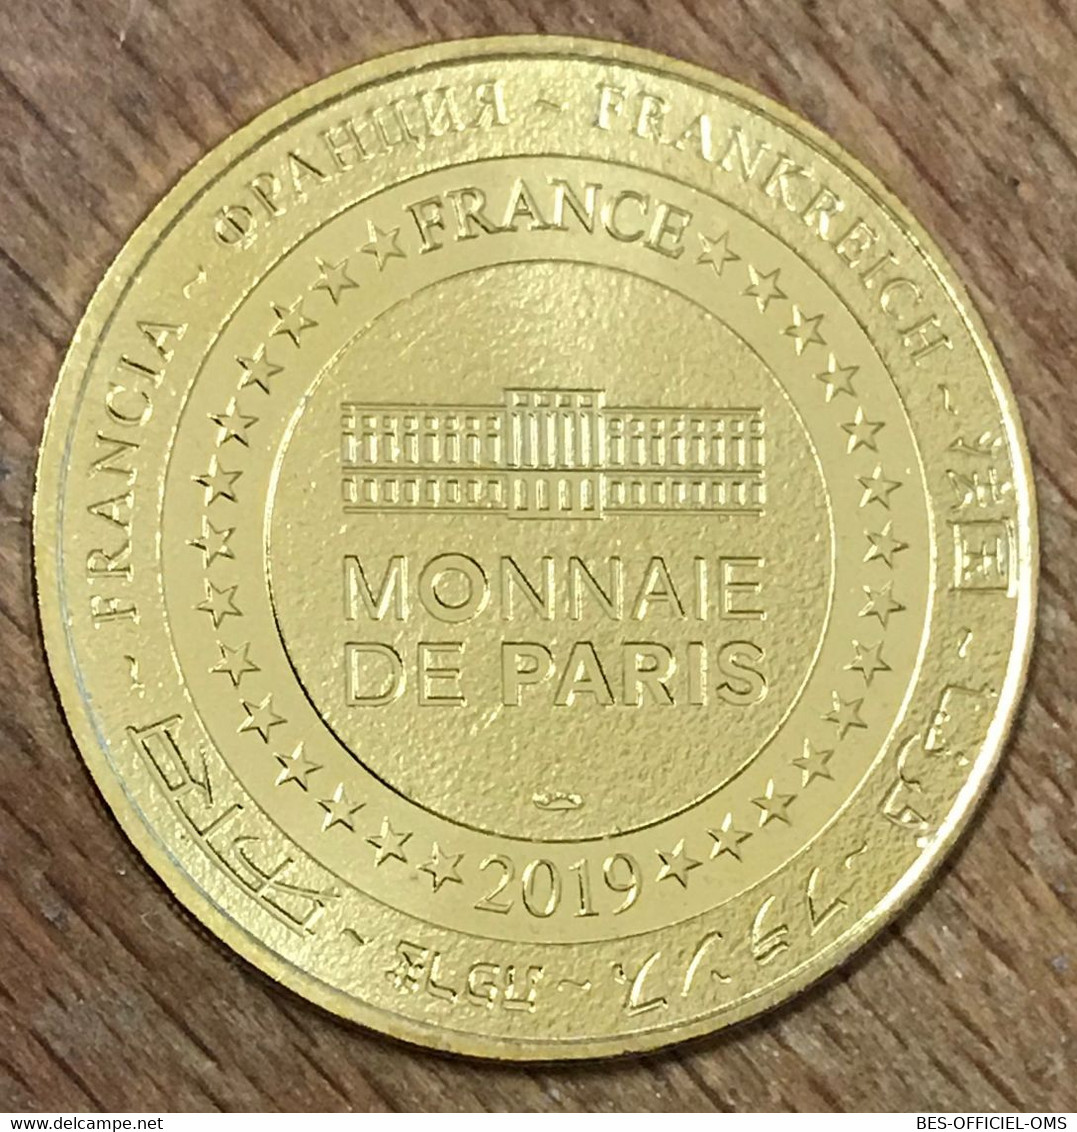 57 HACKENBERG VECKRING LIGNE MAGINOT MDP 2019 MEDAILLE SOUVENIR MONNAIE DE PARIS JETON TOURISTIQUE MEDALS COINS TOKENS - 2019